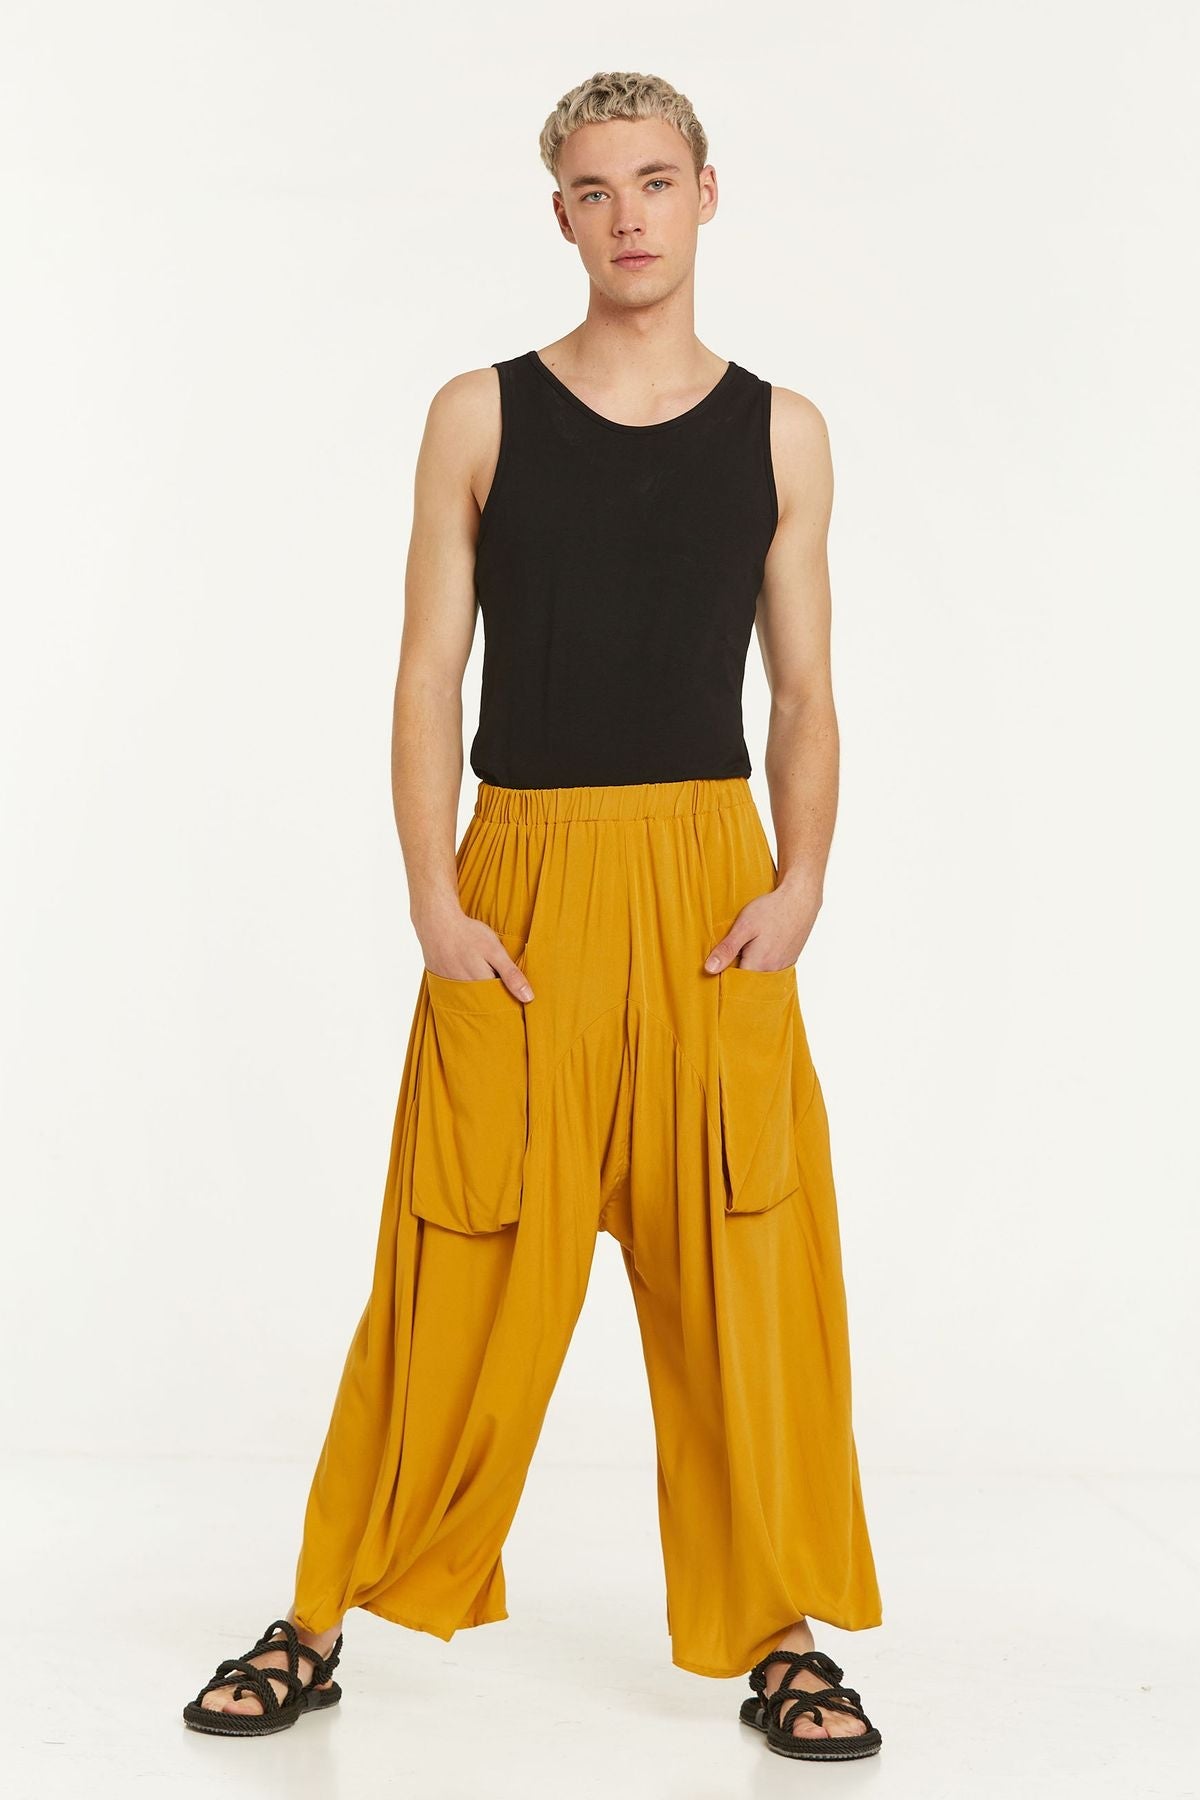 Elastic Waist Harem Style Unisex Pants Yellow